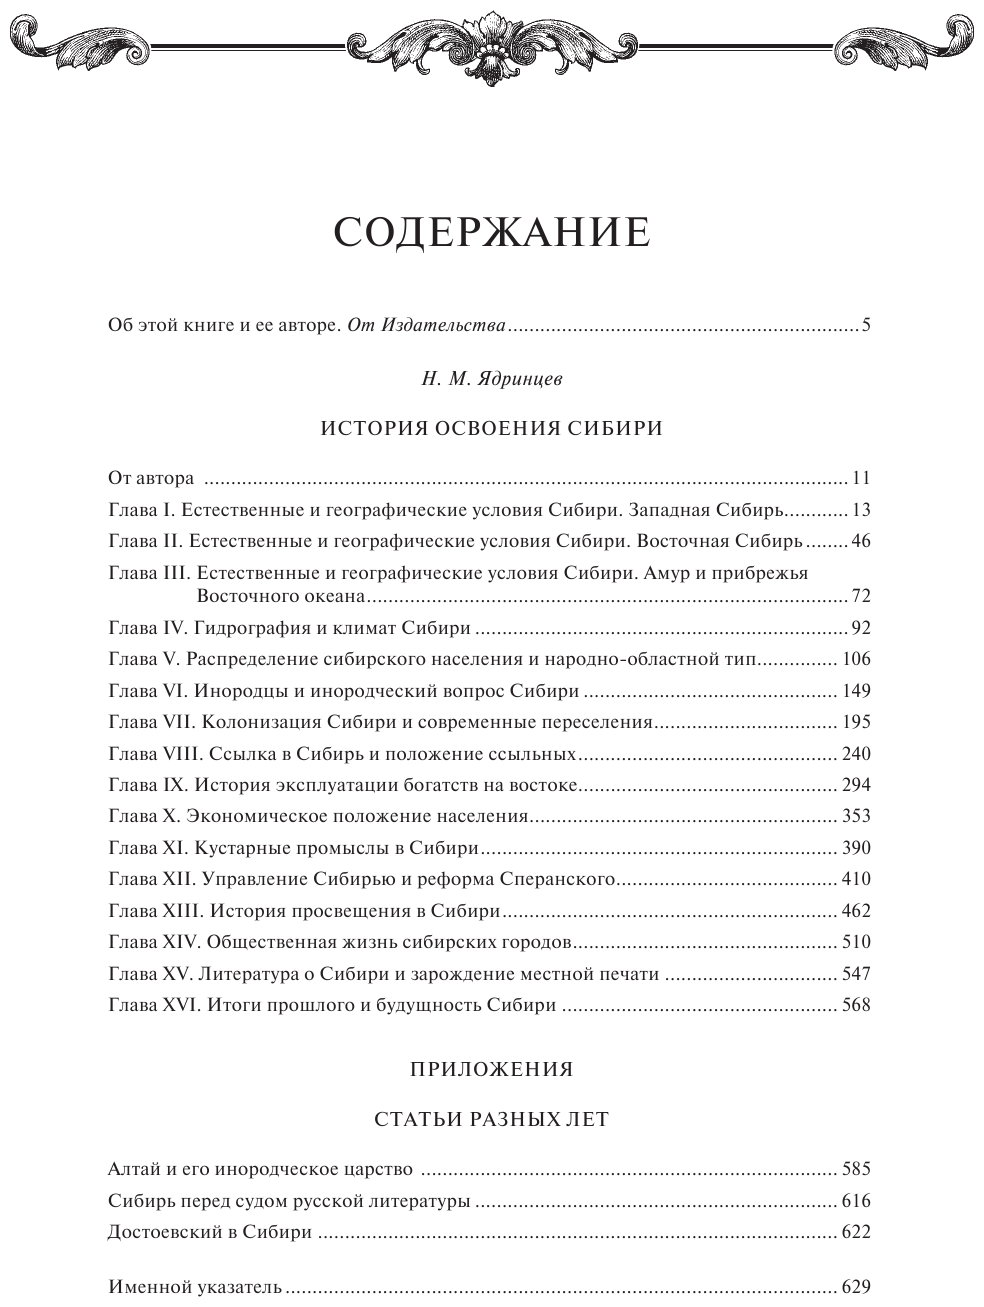 История освоения Сибири (переработанное и обновленное издание) - фото №3